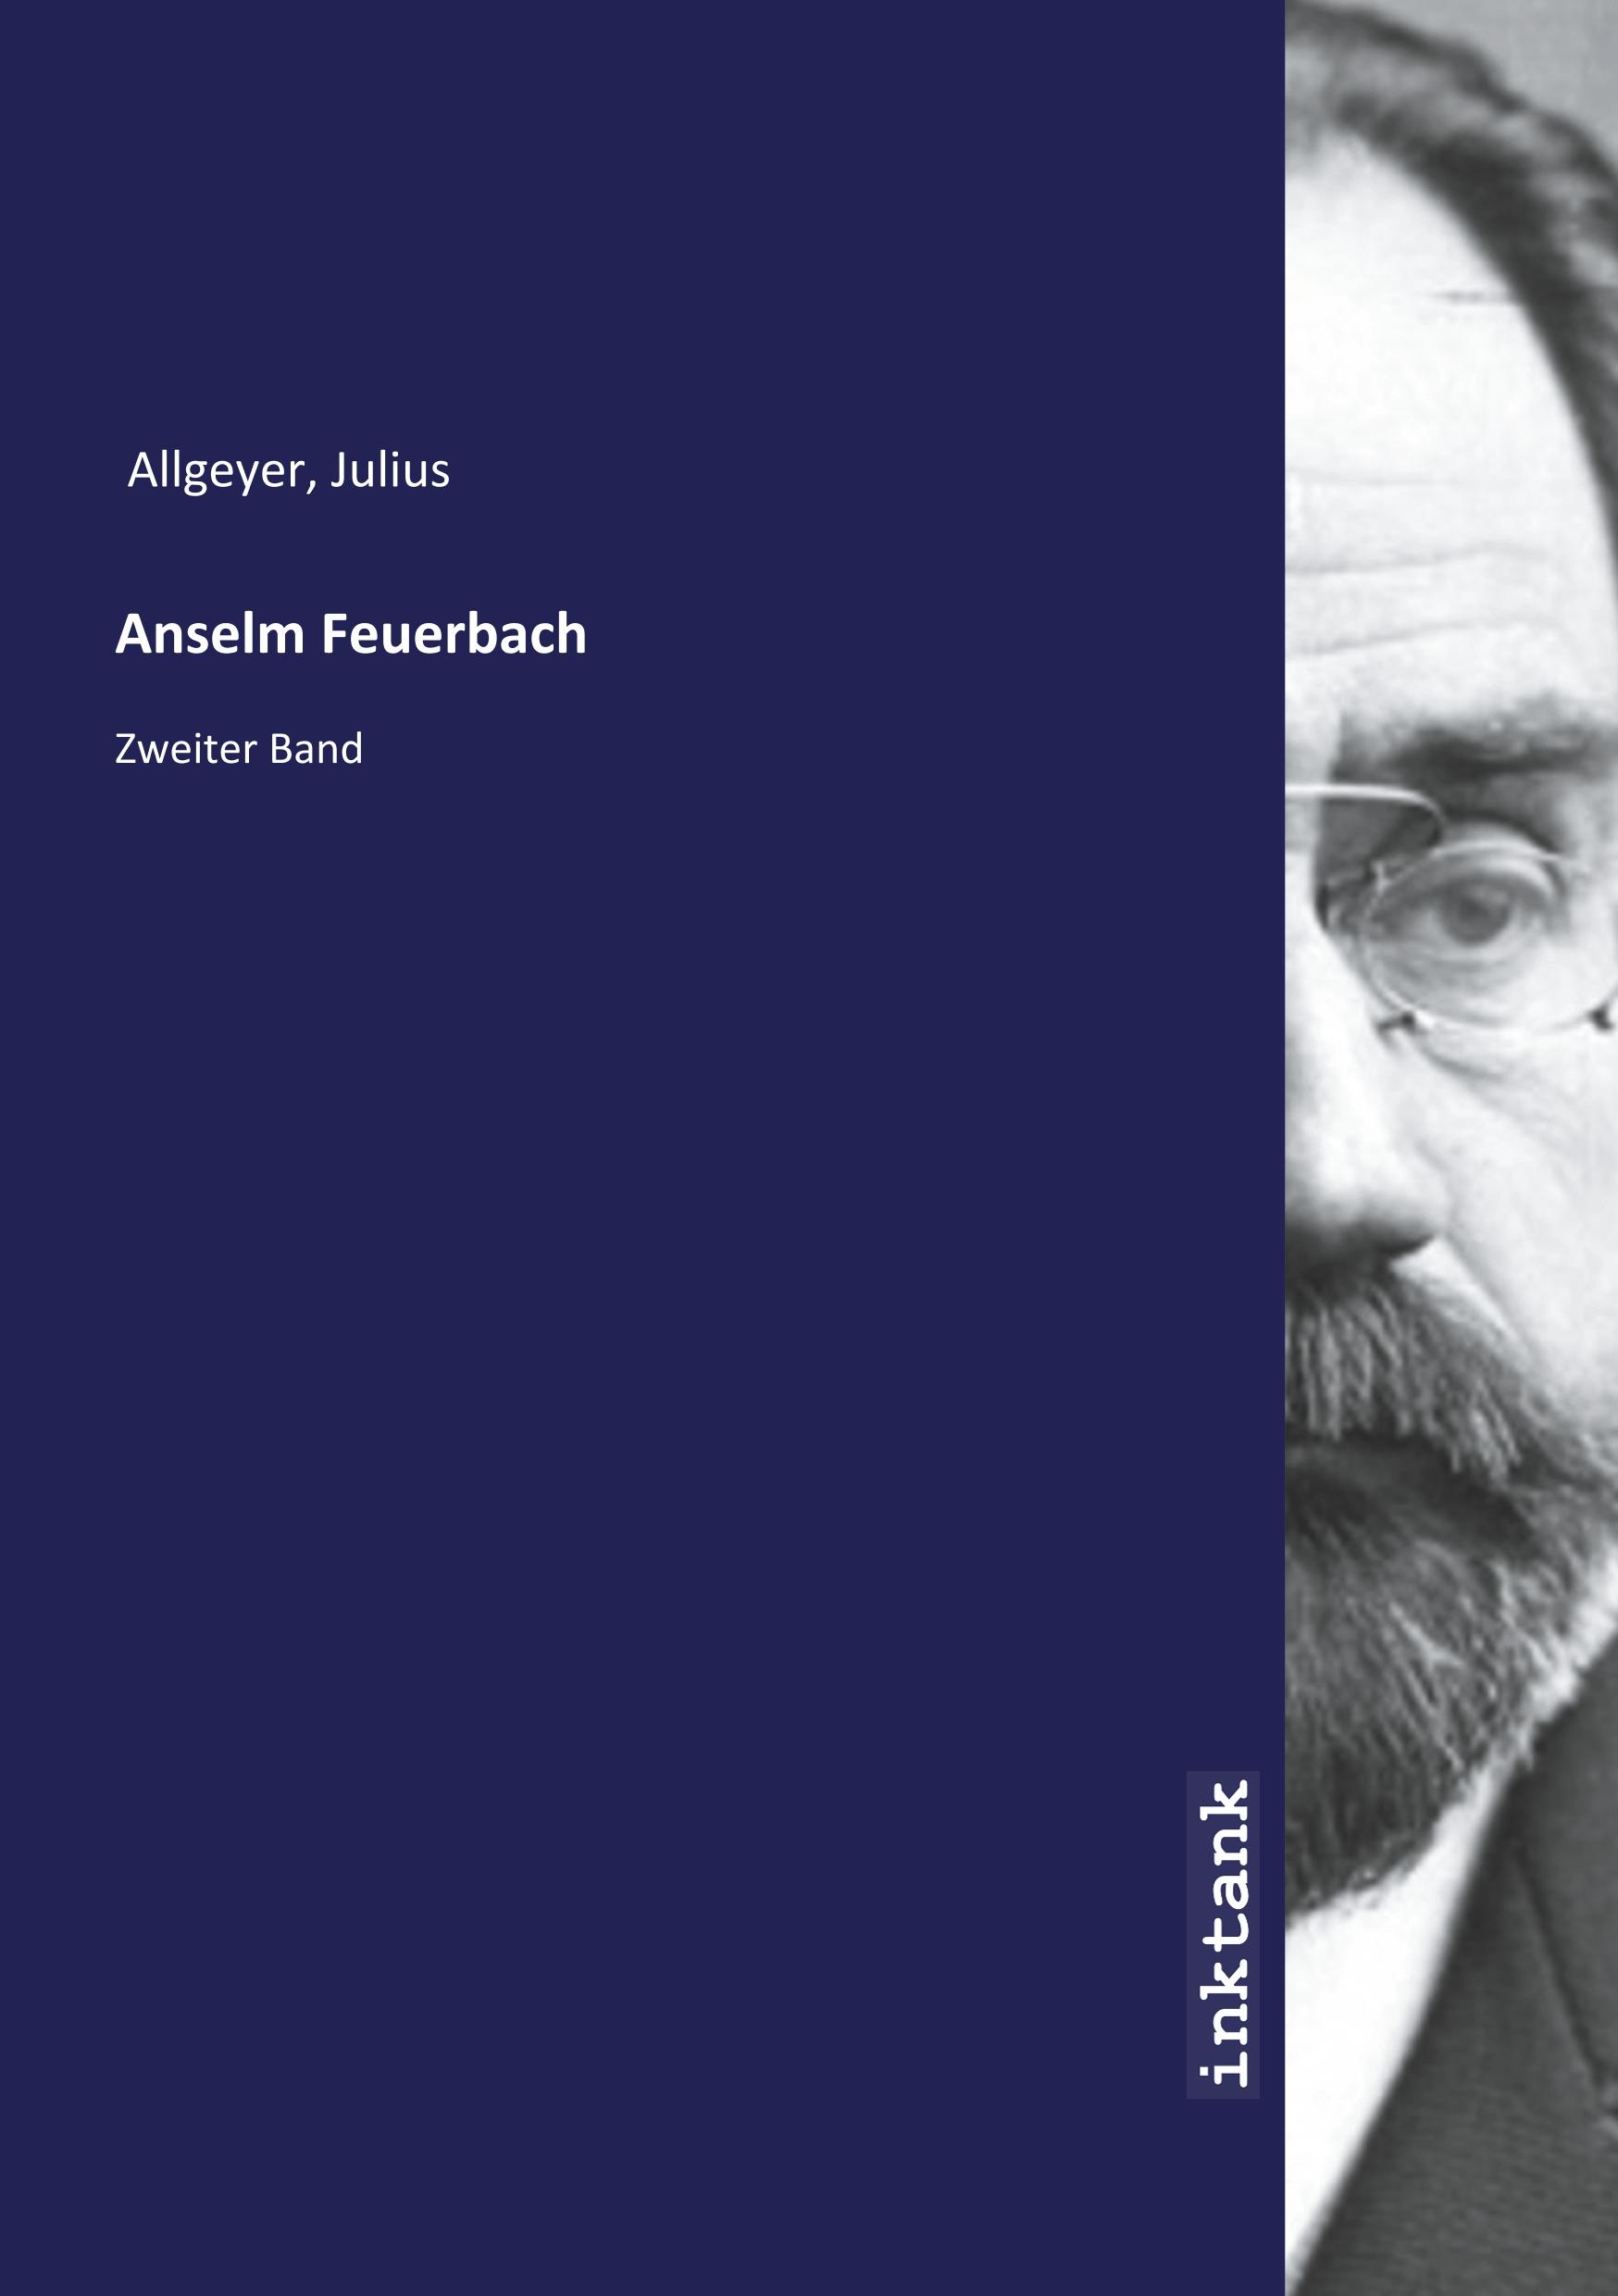 Anselm Feuerbach - Allgeyer, Julius